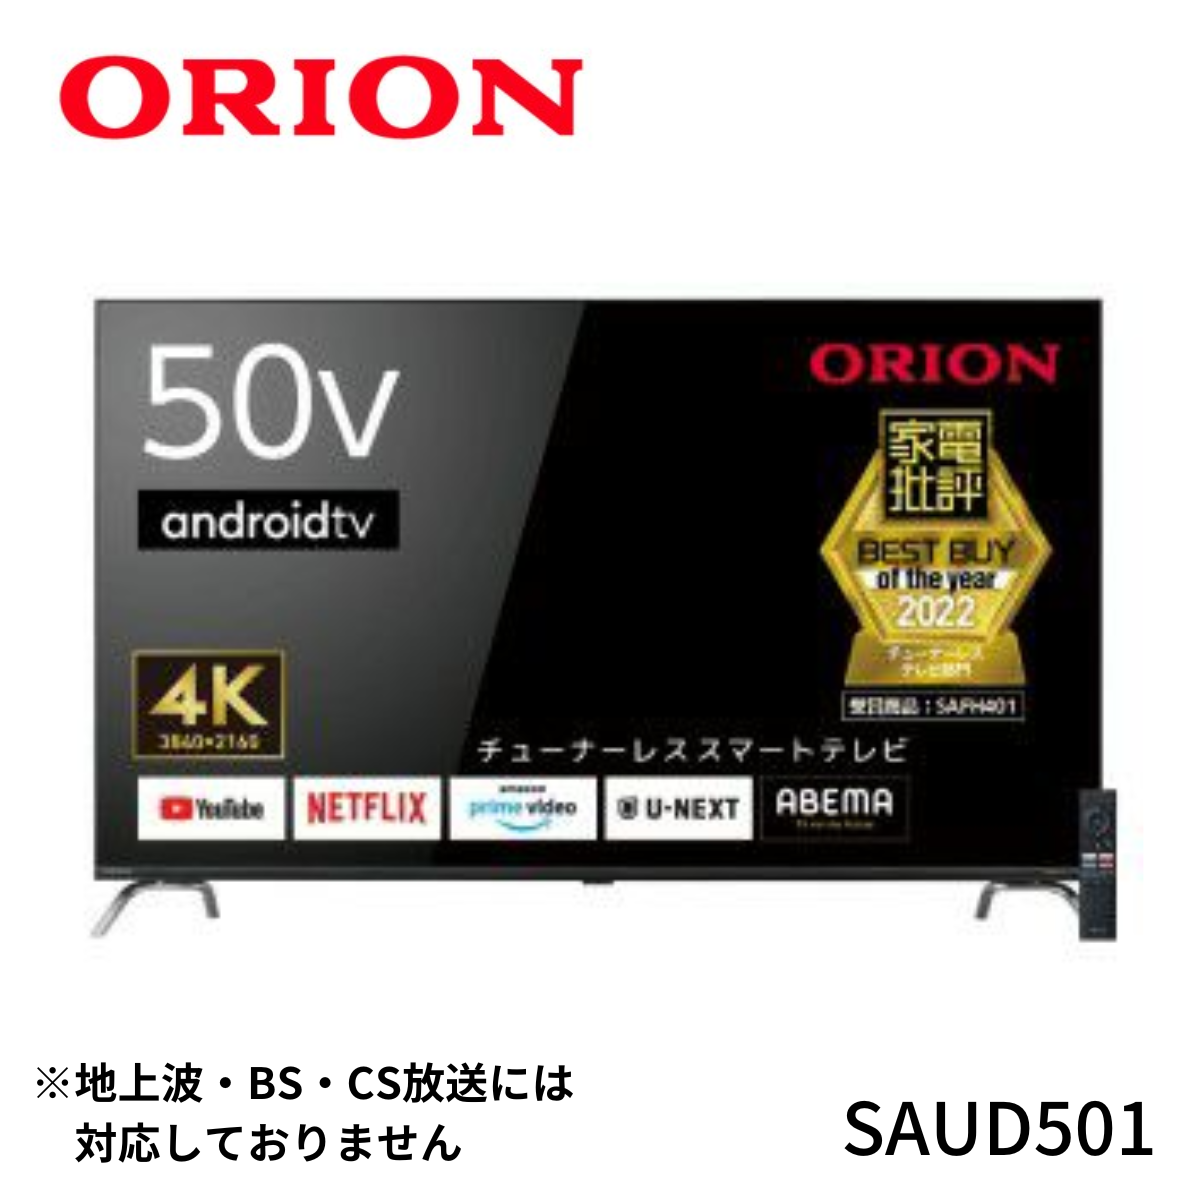 ORION 】AndroidTV™搭載 チューナーレス スマートテレビ 50v型 | SAUD501